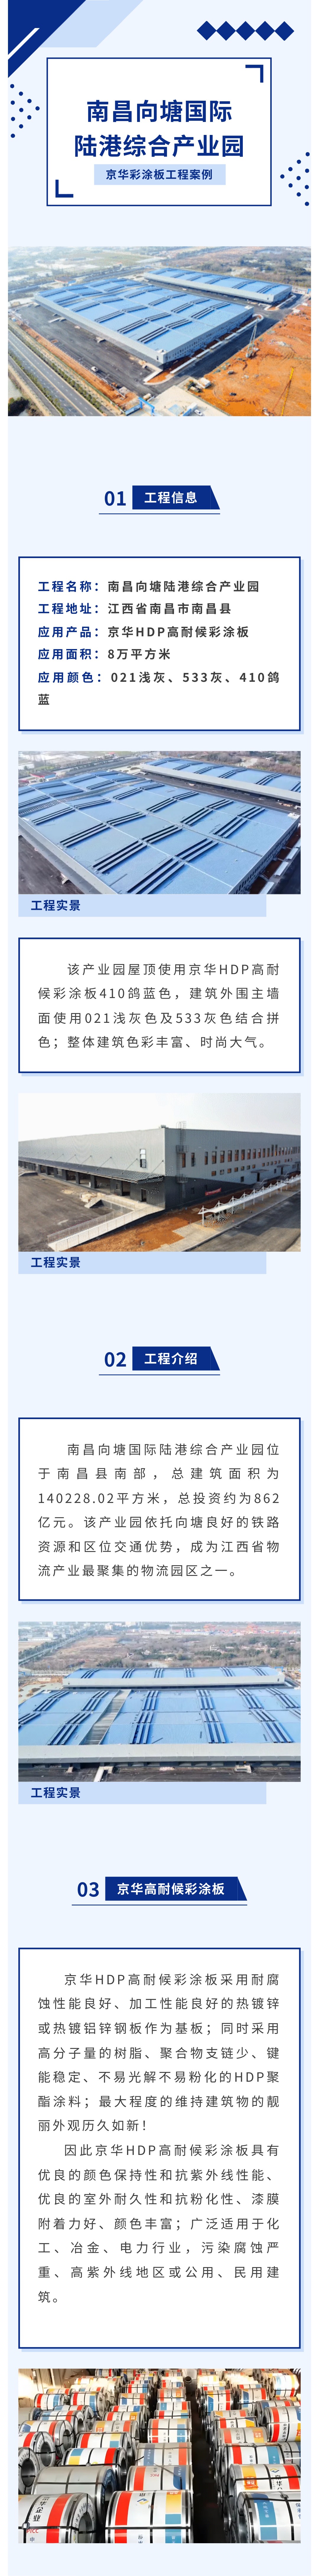 京華高耐候彩涂板應用案例丨南昌向塘國際陸港綜合產業園